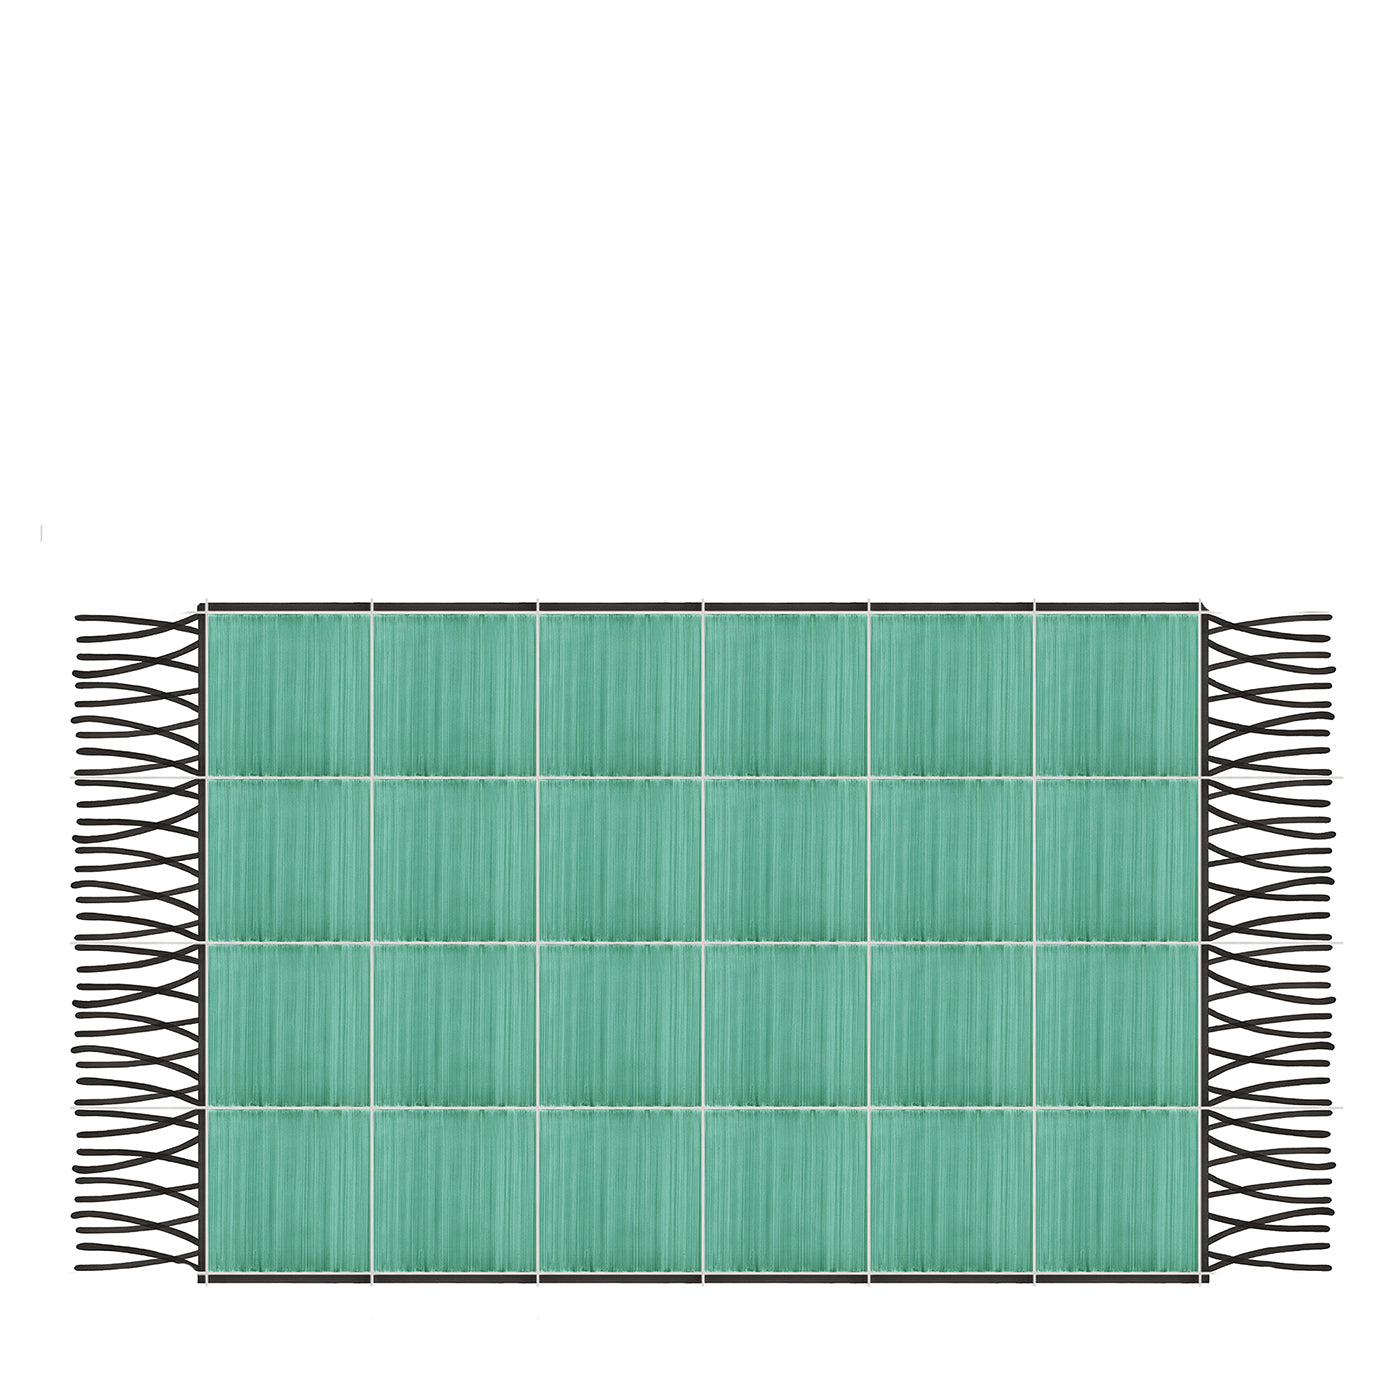 Carpet Total Green Ceramic Composition by Giuliano Andrea dell’Uva 160 x 120 - Main view